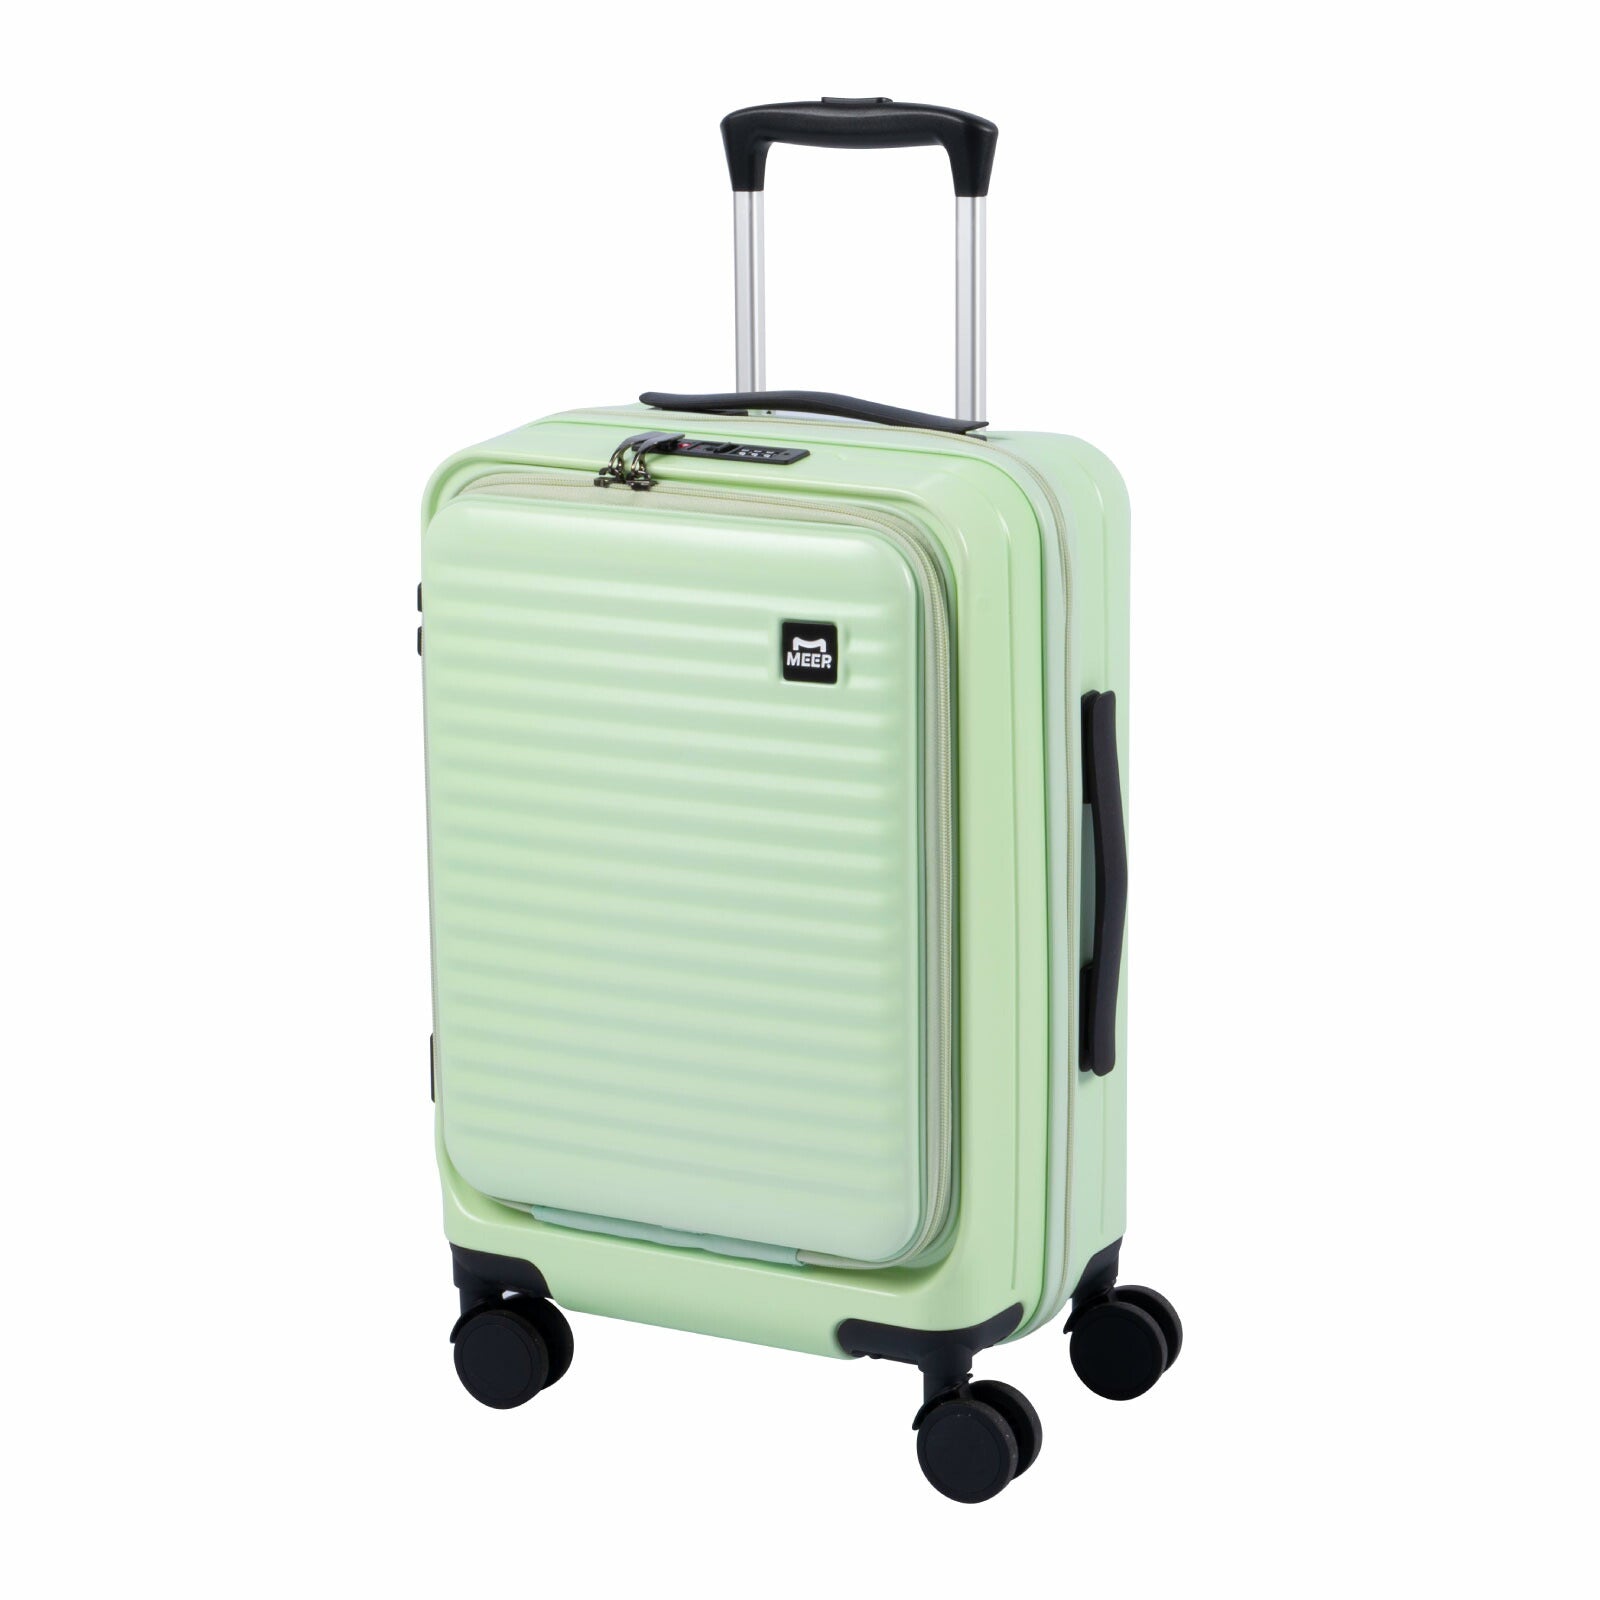 前開き スーツケース キャリーケース Sサイズ 40L キャリーバッグ 4カラー選ぶ 1-3日用 泊まる 軽量設計 360度回転 大容量 ファスナー式 ビジネス 修学旅行 海外旅行 国内旅行 小型 出張 sc118-20